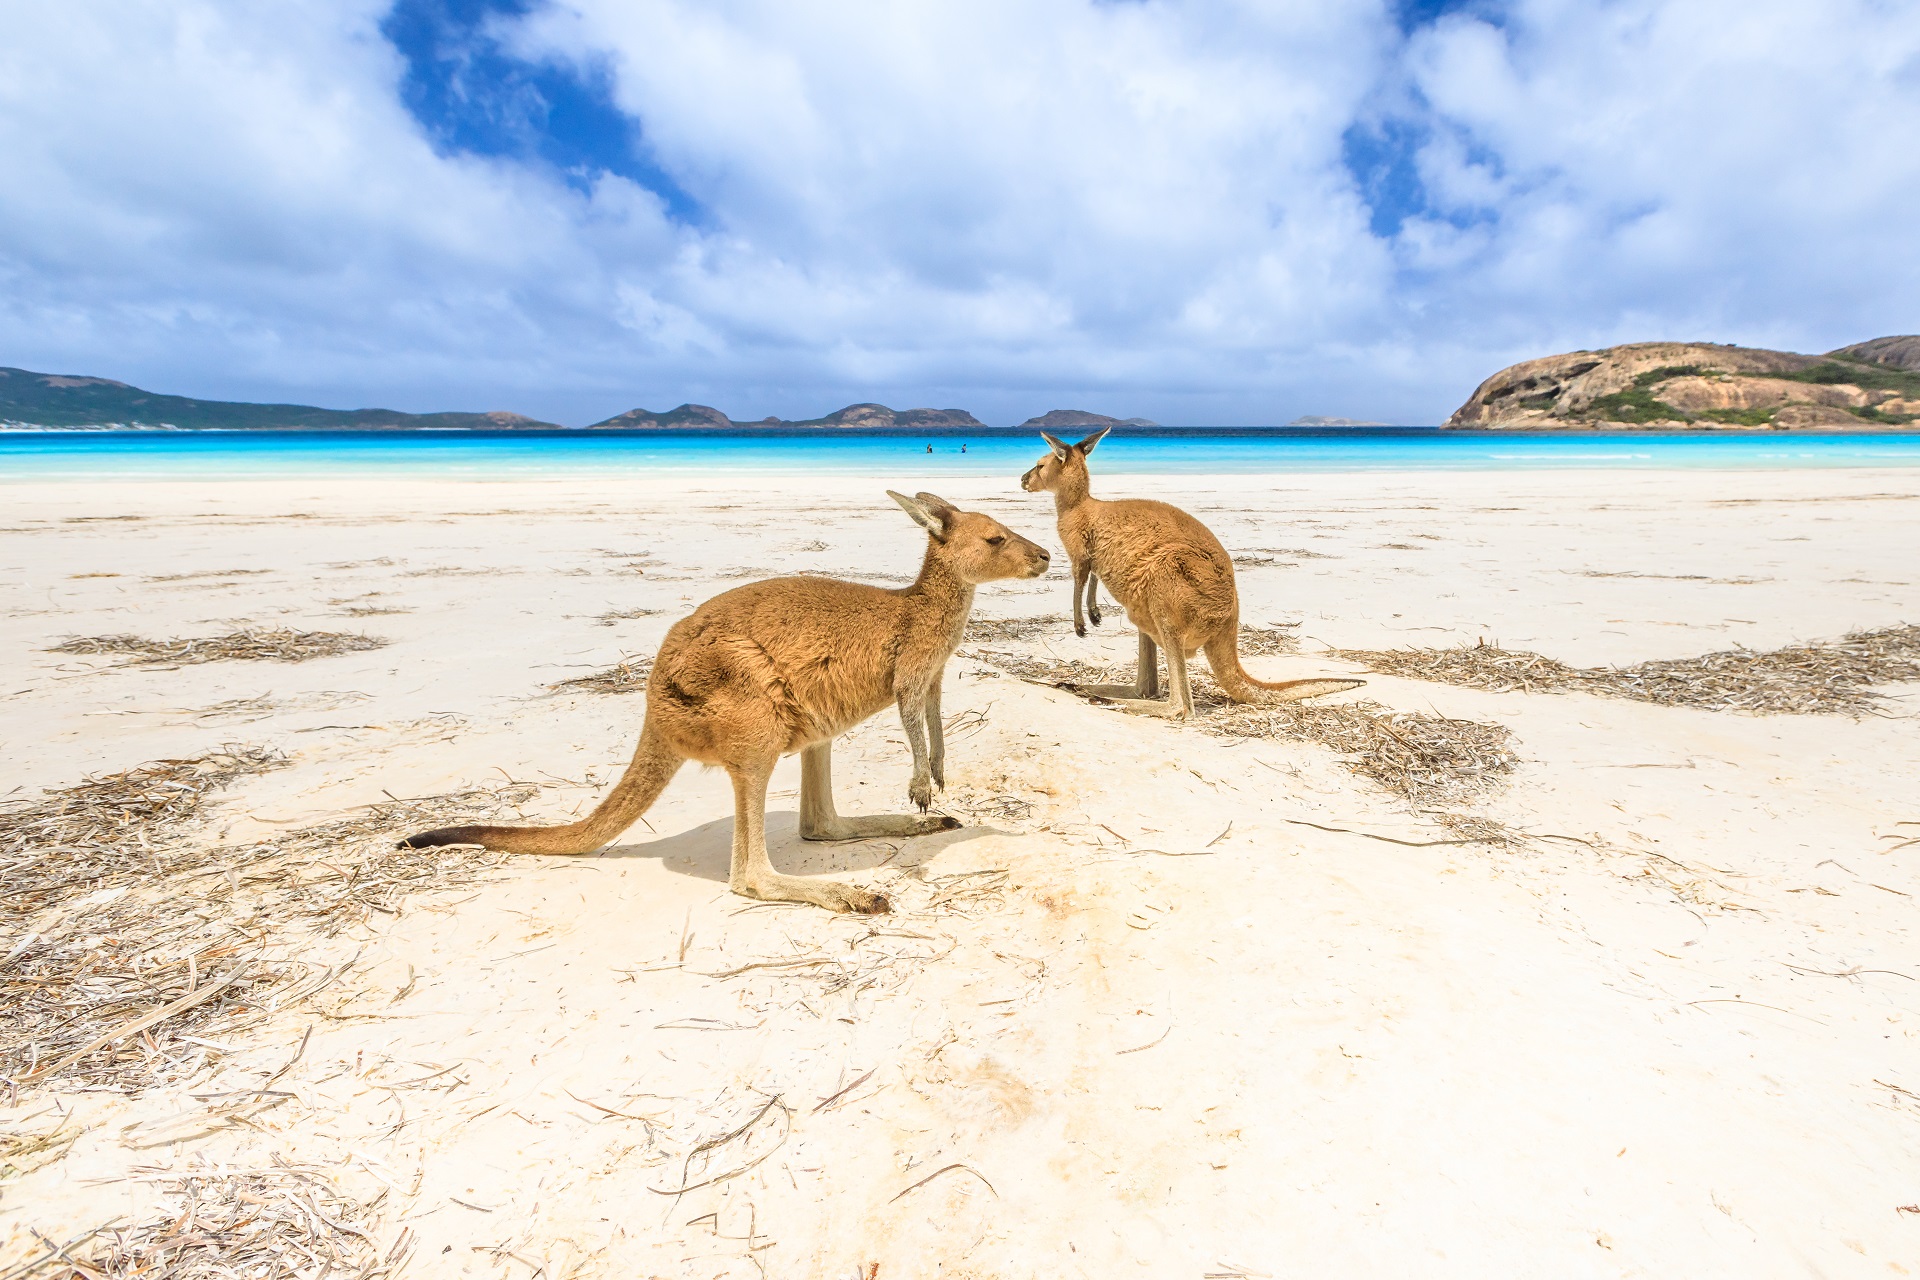 Kängurus am Strand von Australien